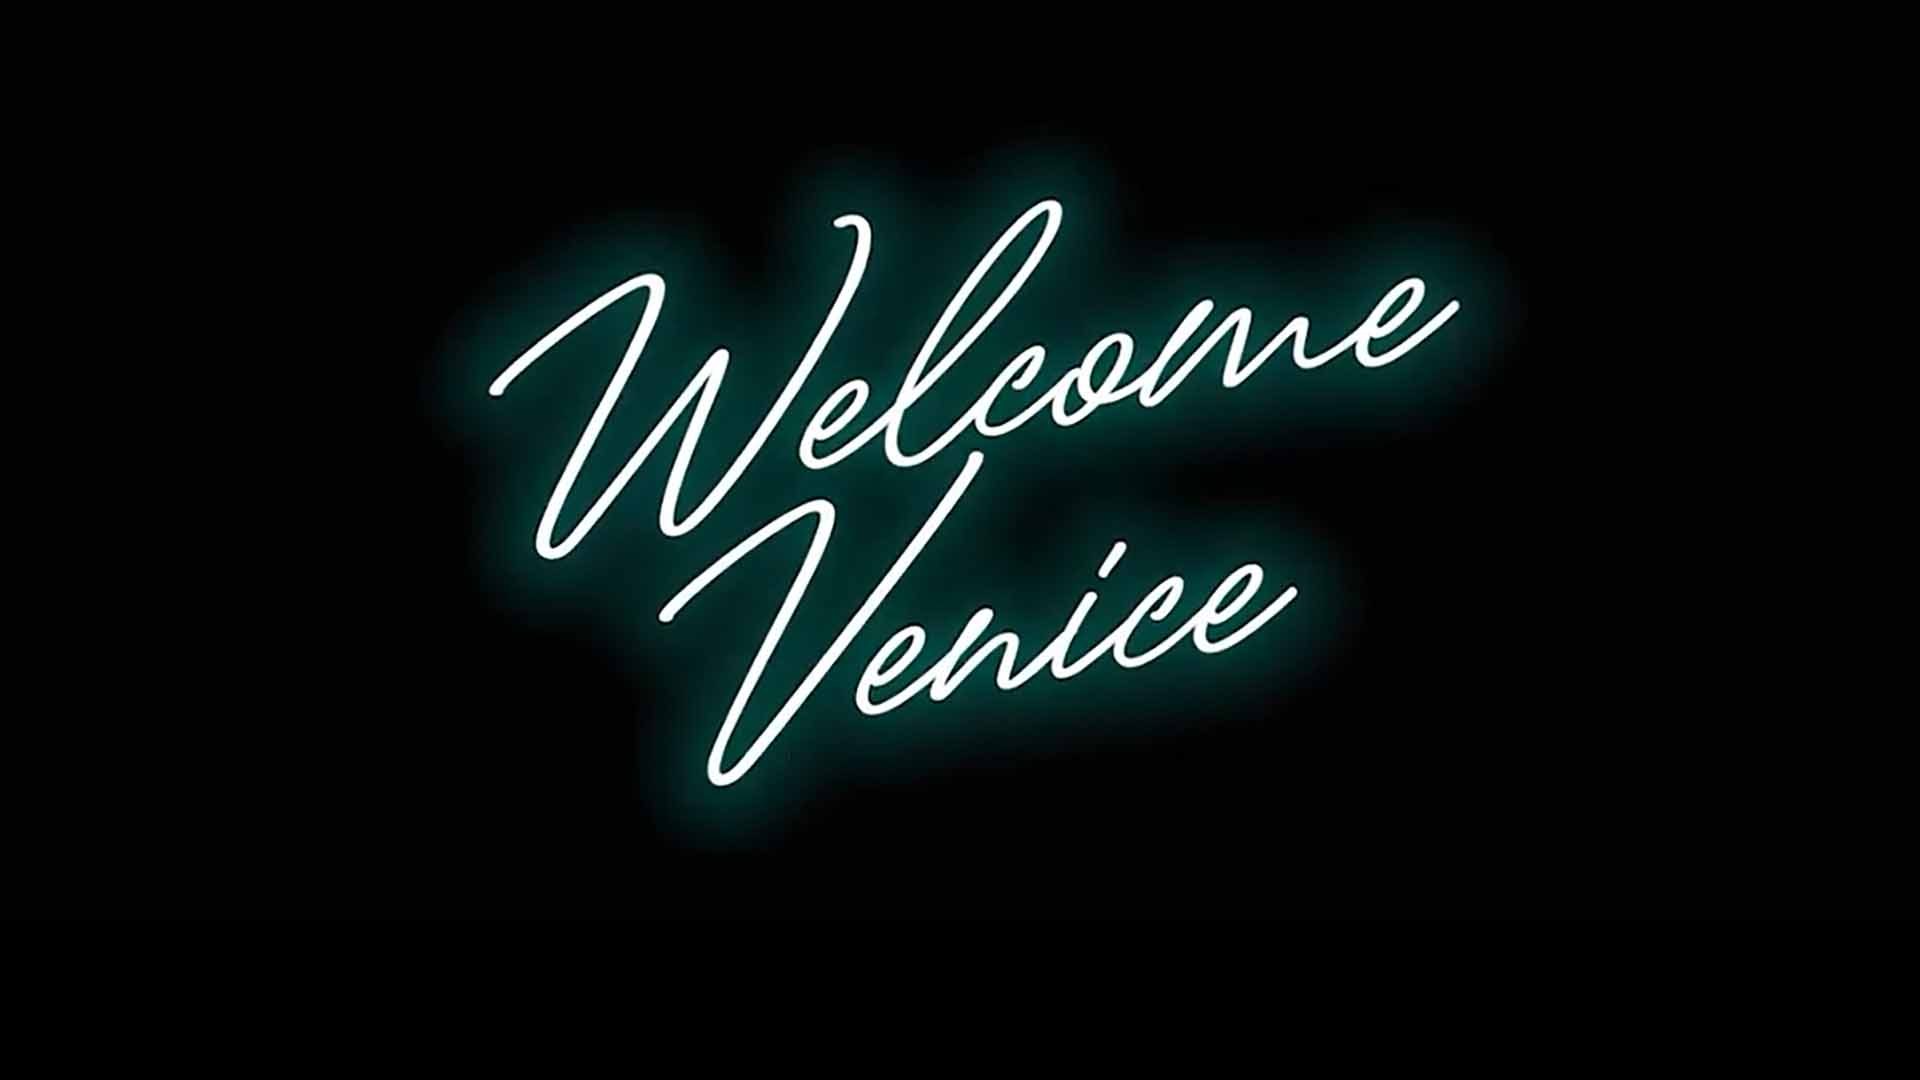 Welcome Venice_MessinaWebTv_Cultura